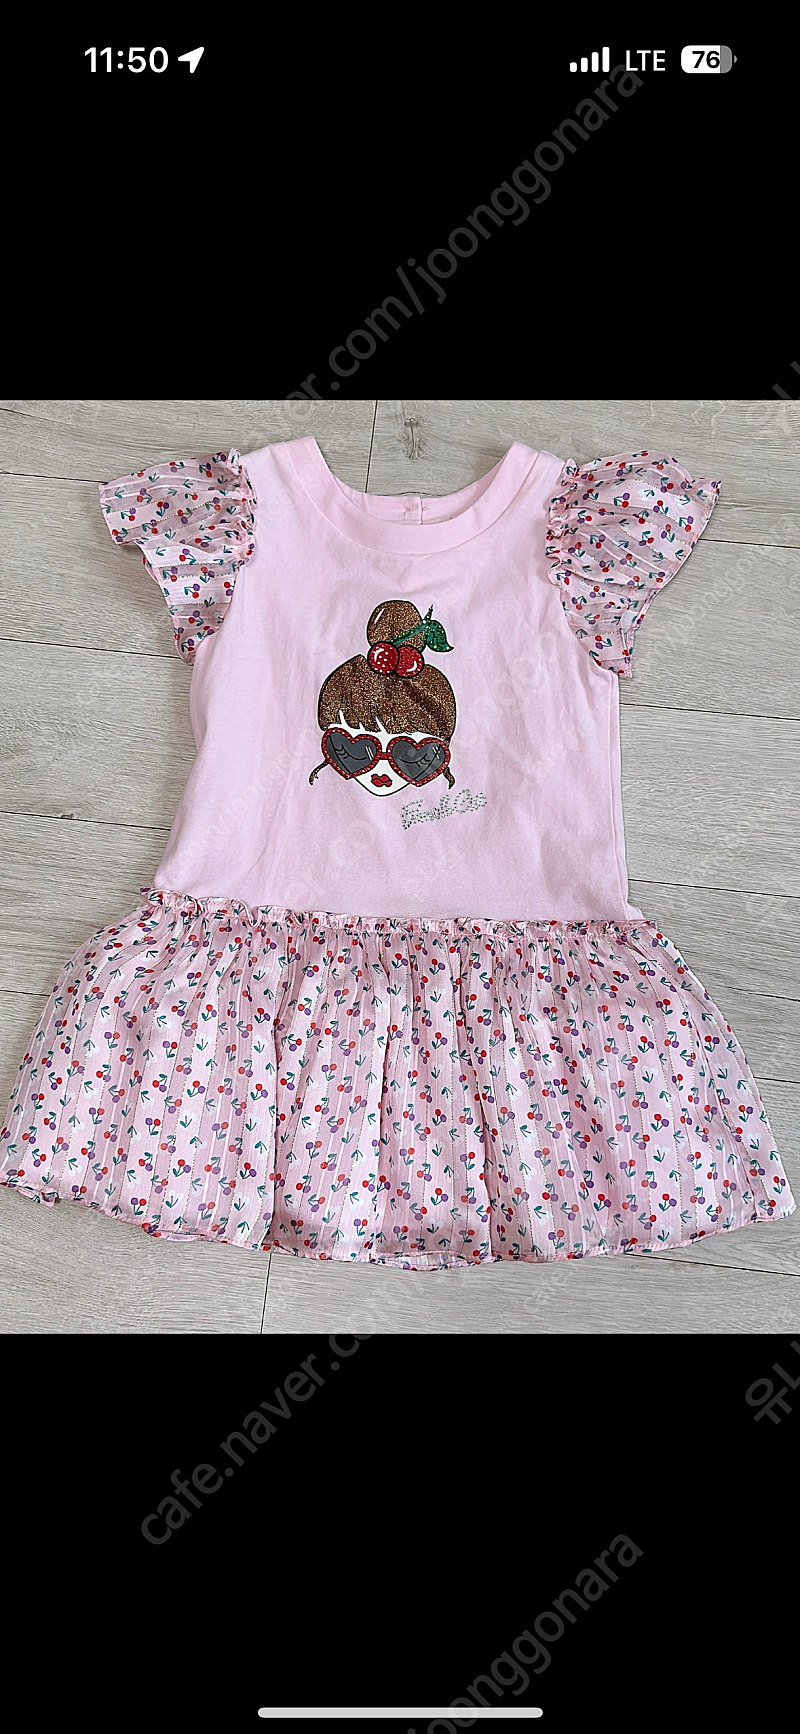 프렌치캣 원피스 티셔츠 110 새상품 두돌 세돌 아기옷